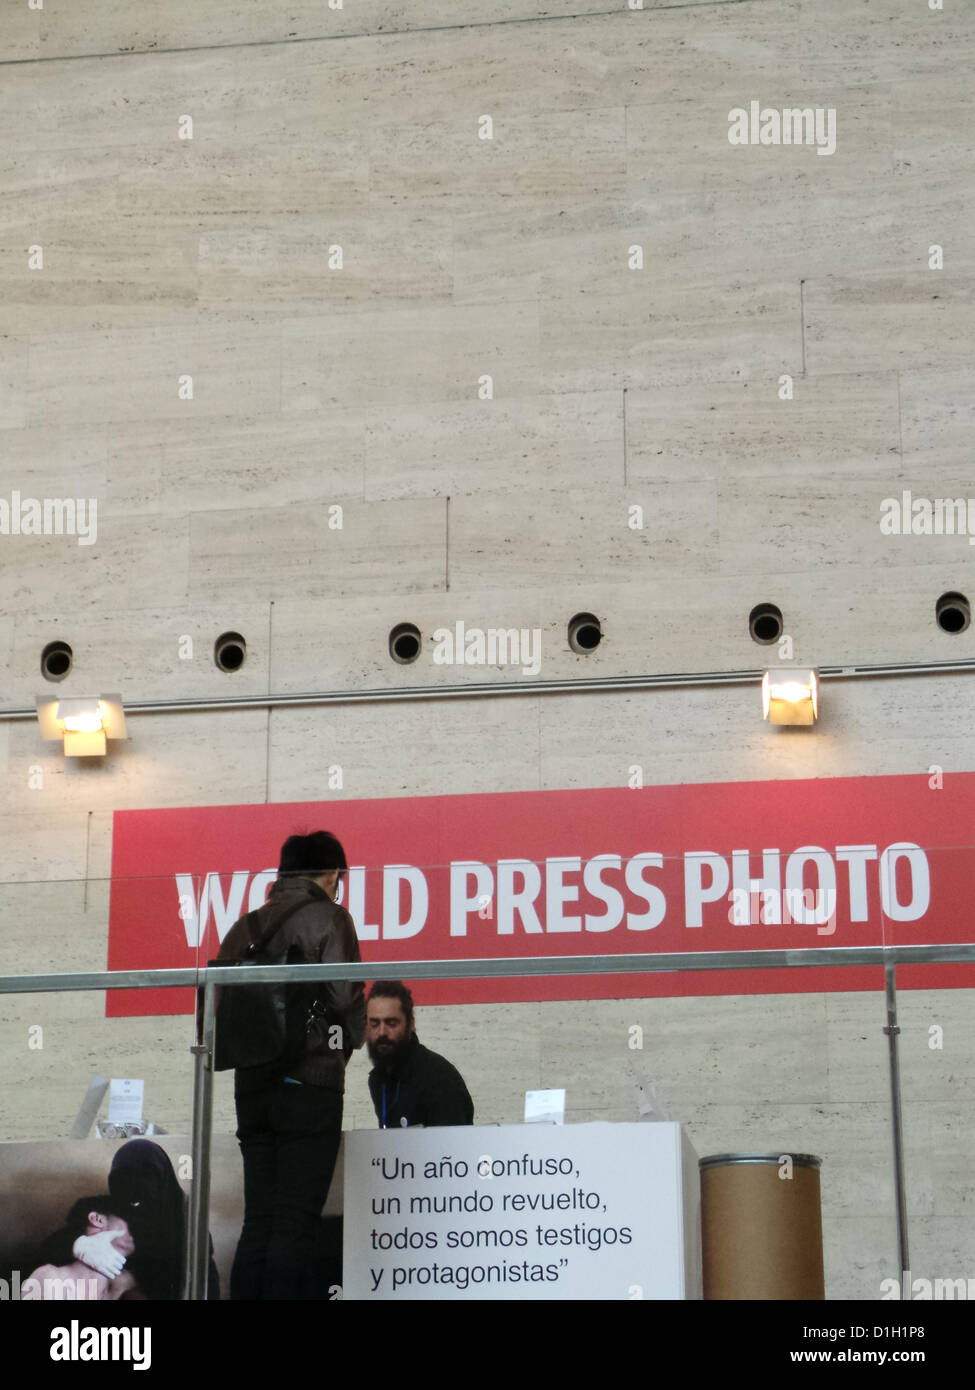 L'exposition World Press Photo à Barcelone est situé dans le Centre de Culture Contemporaine de Barcelone (CCCB) jusqu'au 6 janvier 2013. Le catalan Samuel Aranda a gagné cette année et a une exposition dans le même lieu avec le nom "Après la Révolution". Banque D'Images